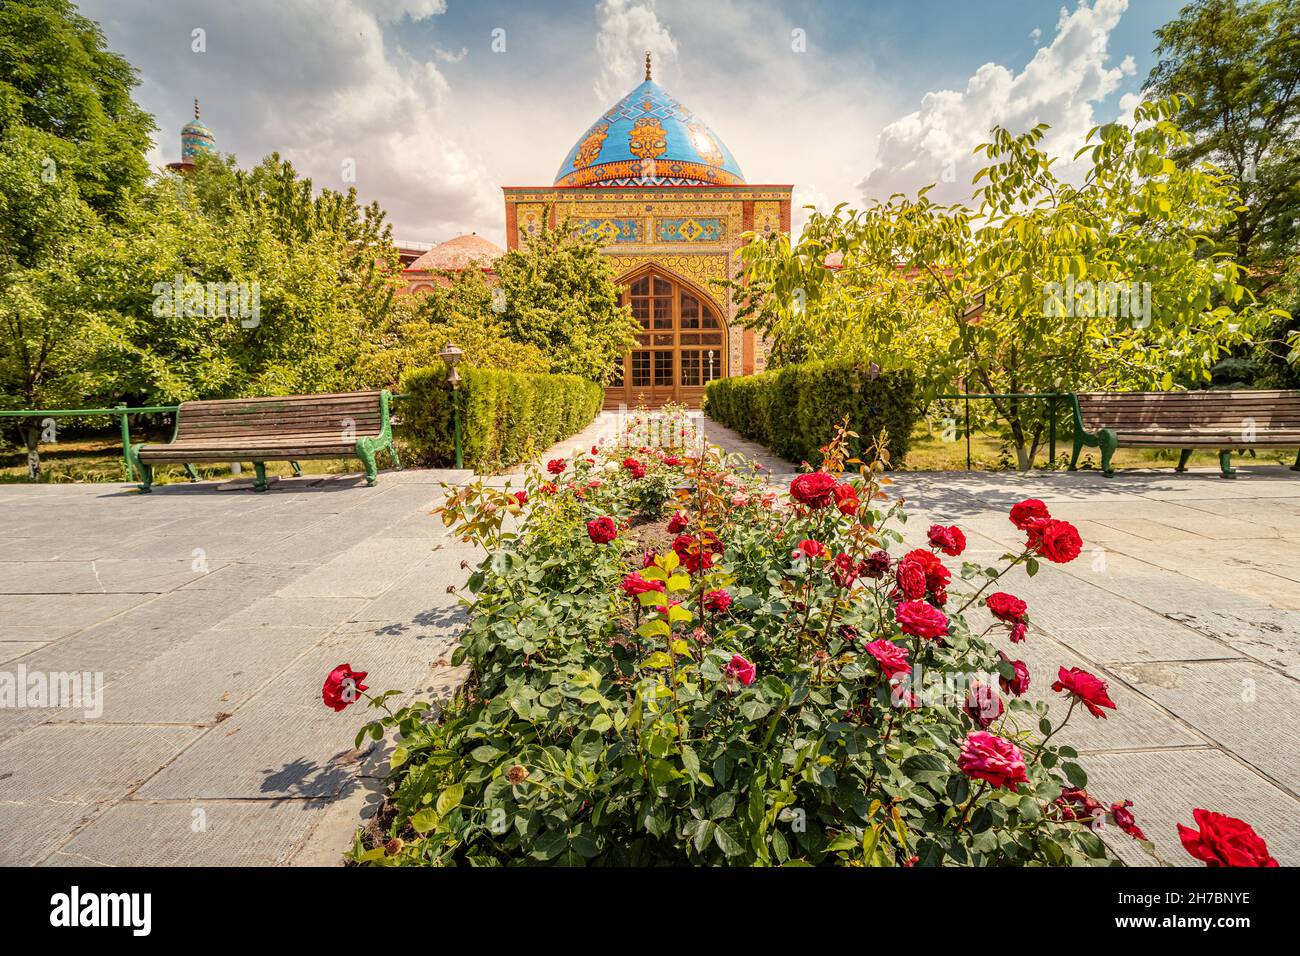 Eine beliebte Touristenattraktion in Jerewan ist die Blaue Persische Moschee in einem stimmungsvollen Garten mit Rosen Stockfoto